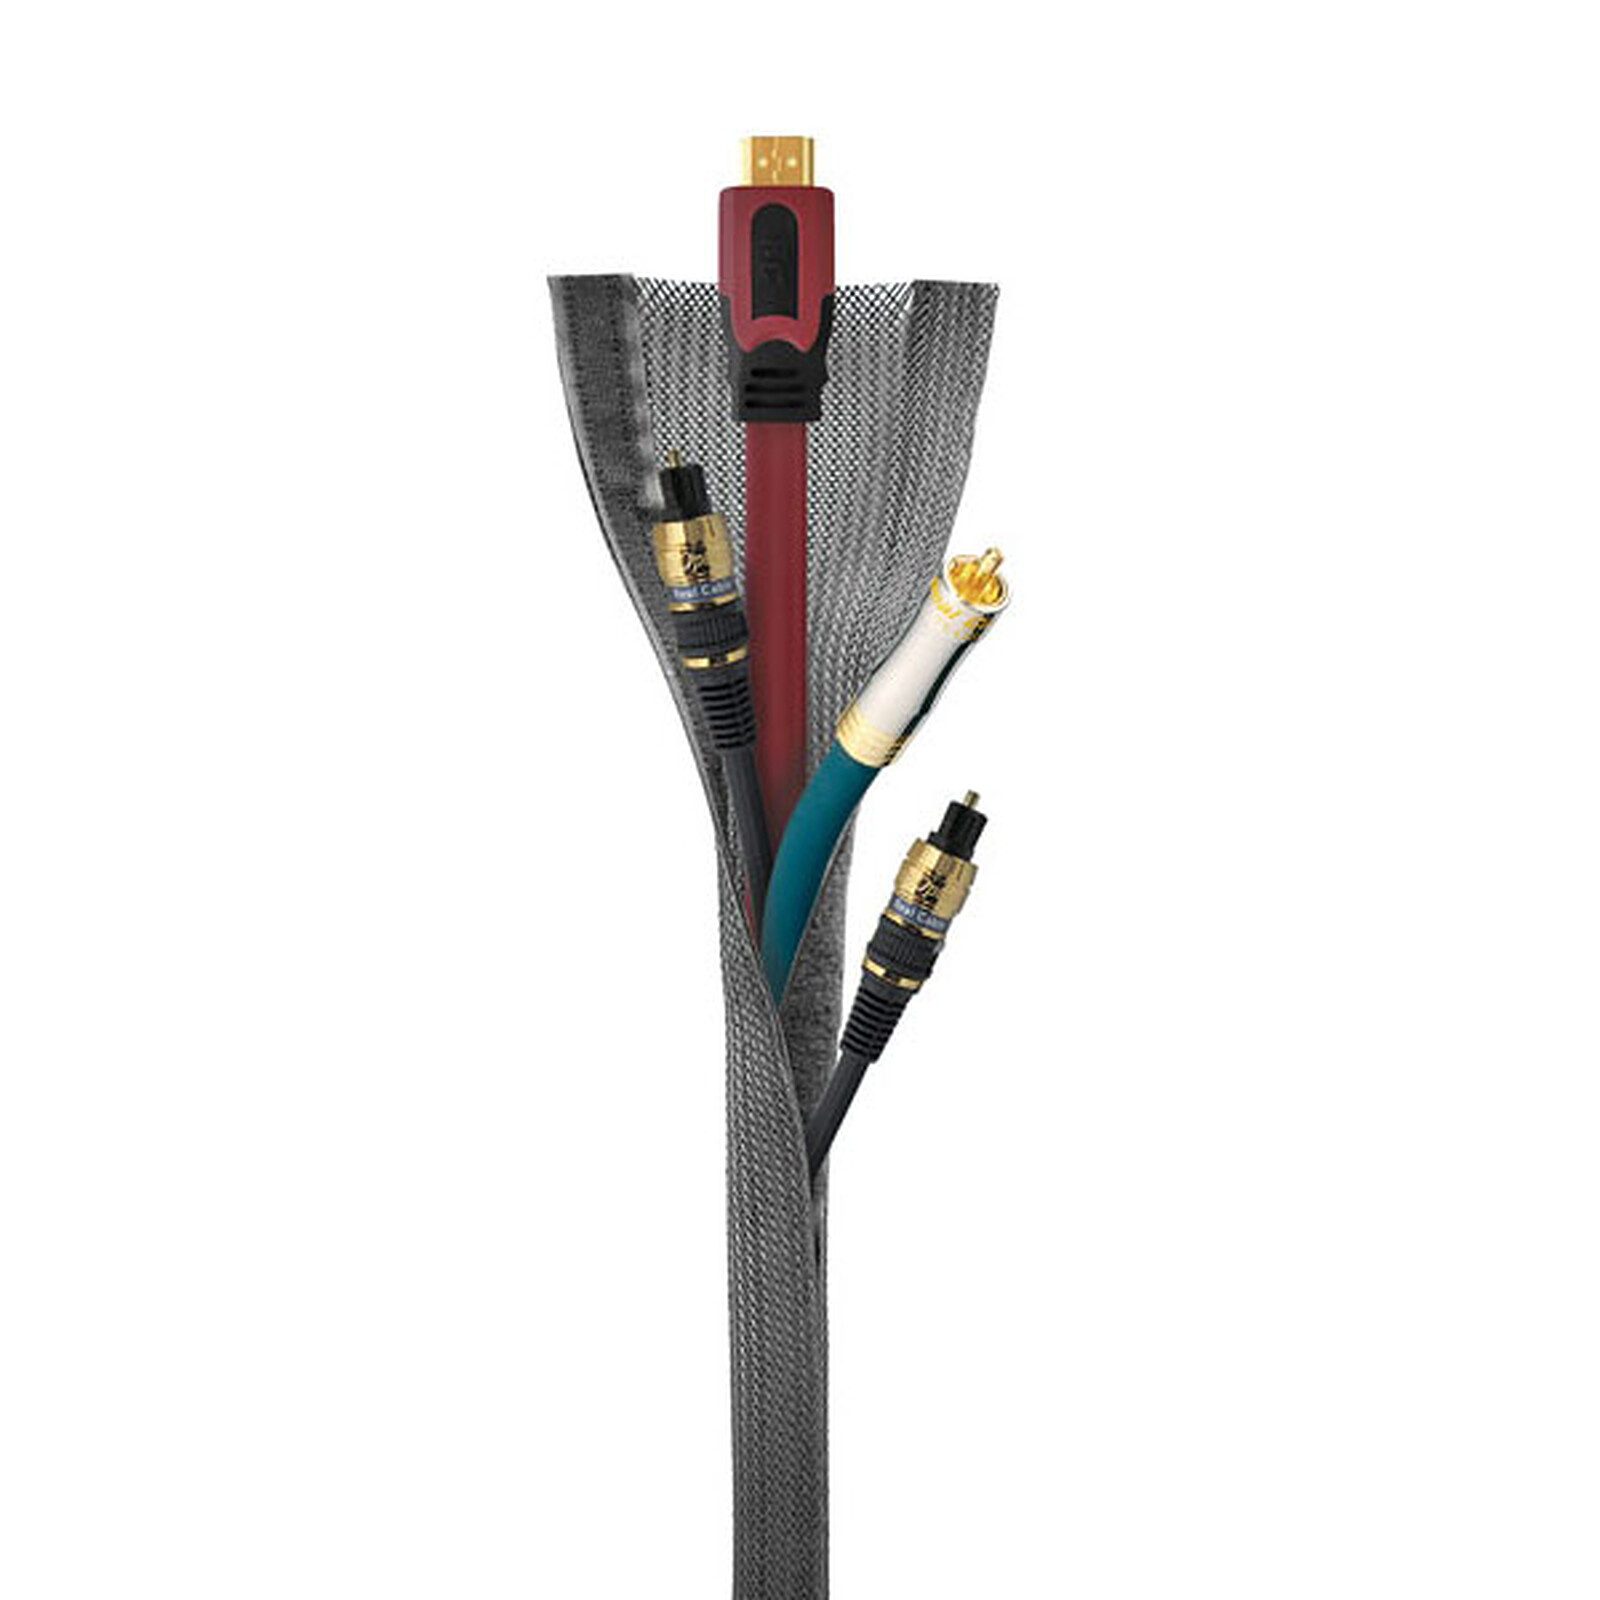 Gaine de rangement pour câbles - diamètre max. 100 mm - longueur 10 m  (coloris blanc) - Passe câble - Garantie 3 ans LDLC